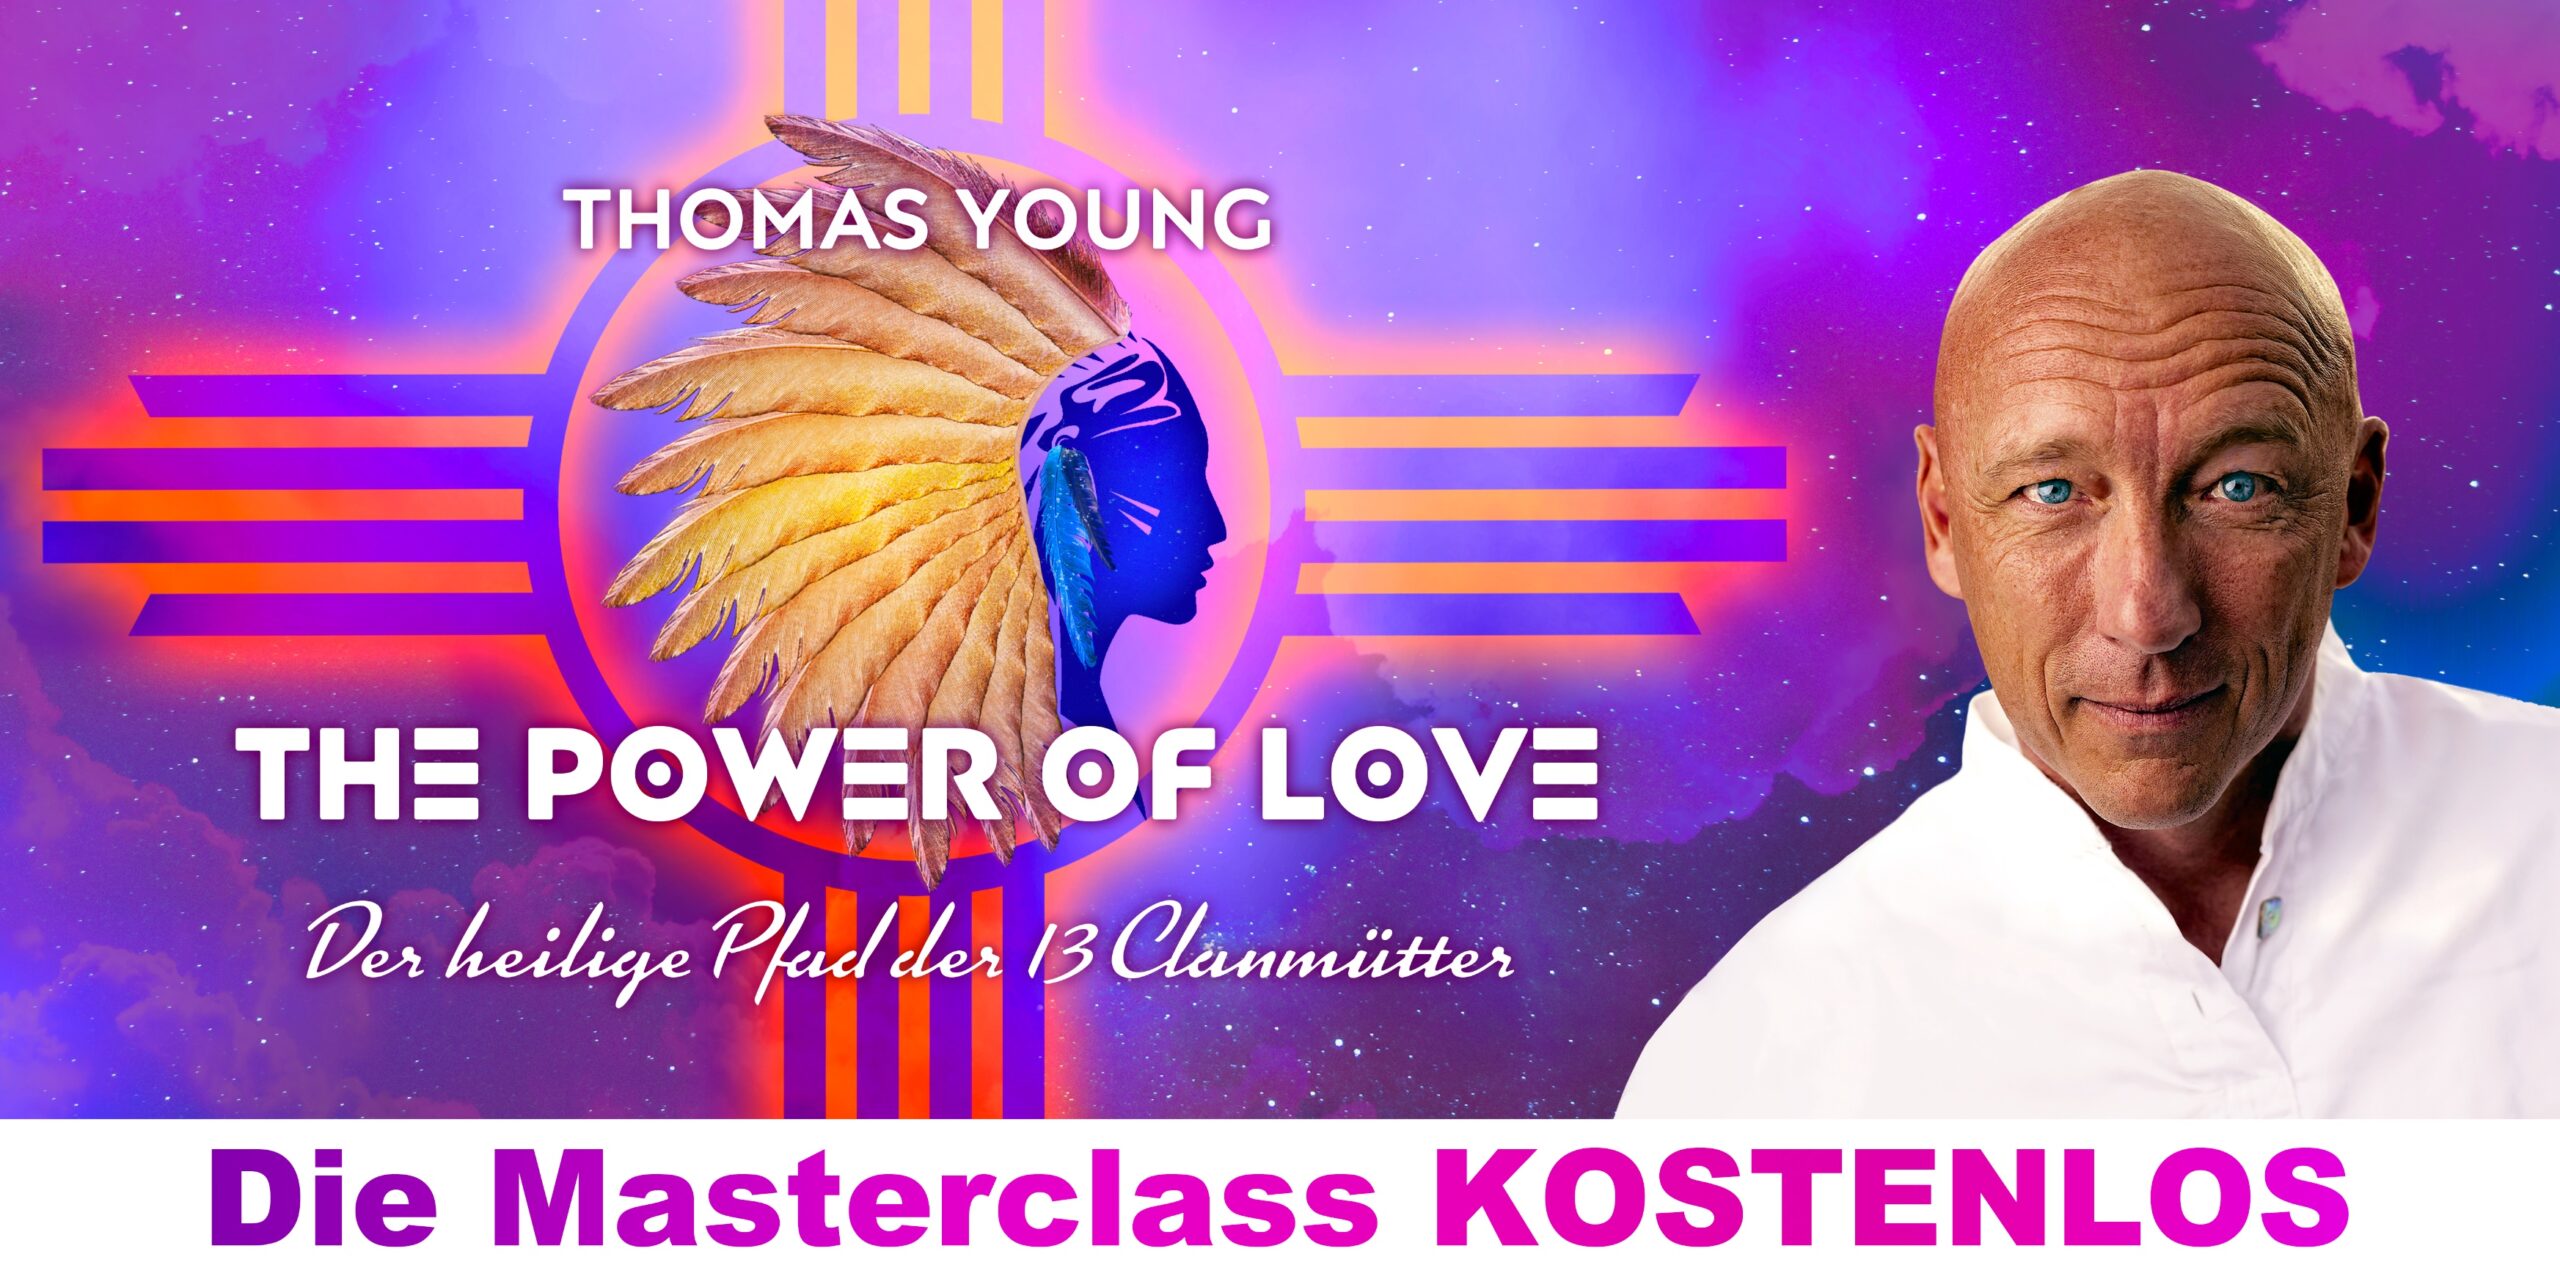 Der heilige Pfad der 13 Clanmütter - Kostenlose Masterclass von Herzlehrer Thomas Young